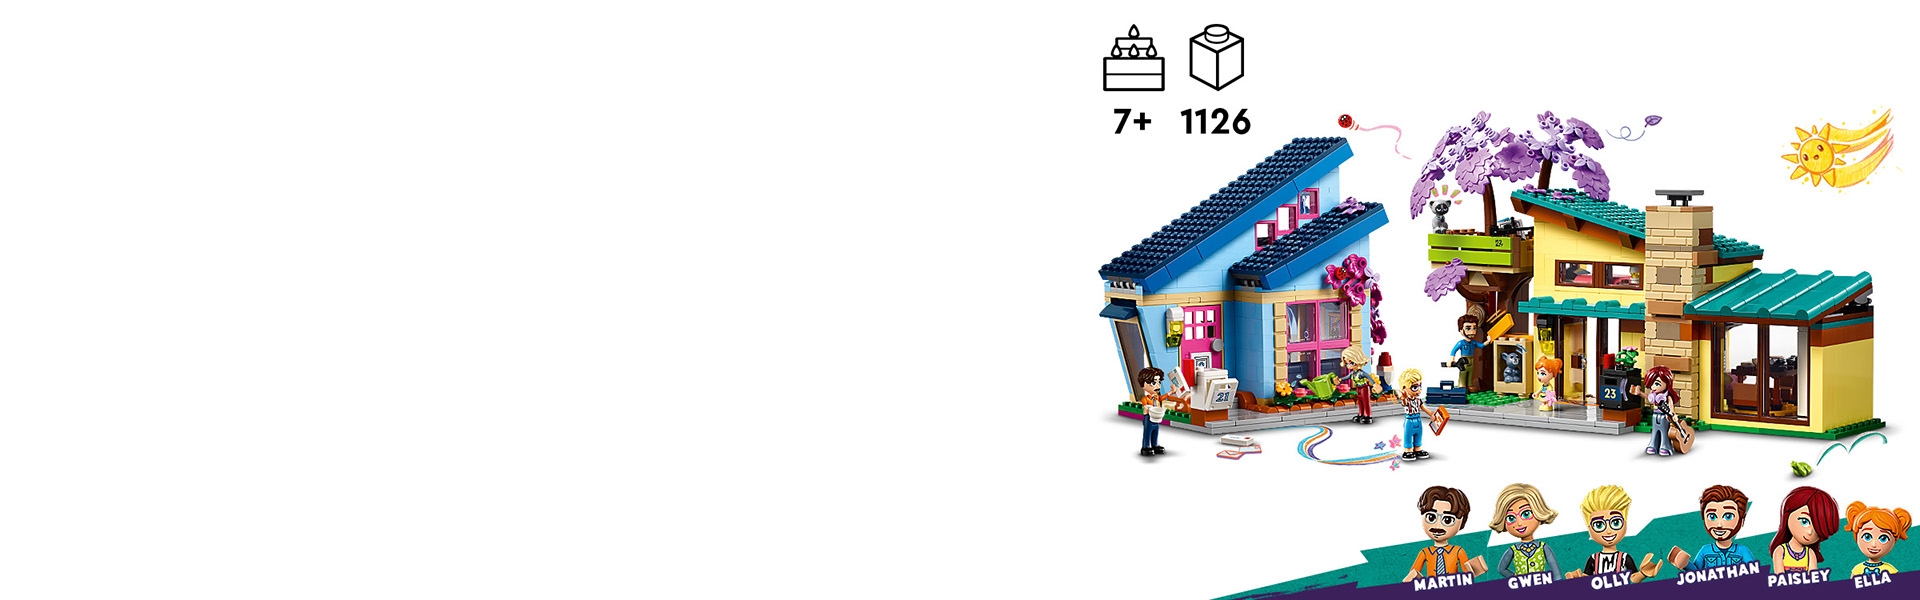 斜顶树屋42620 | 好朋友| LEGO.com CN